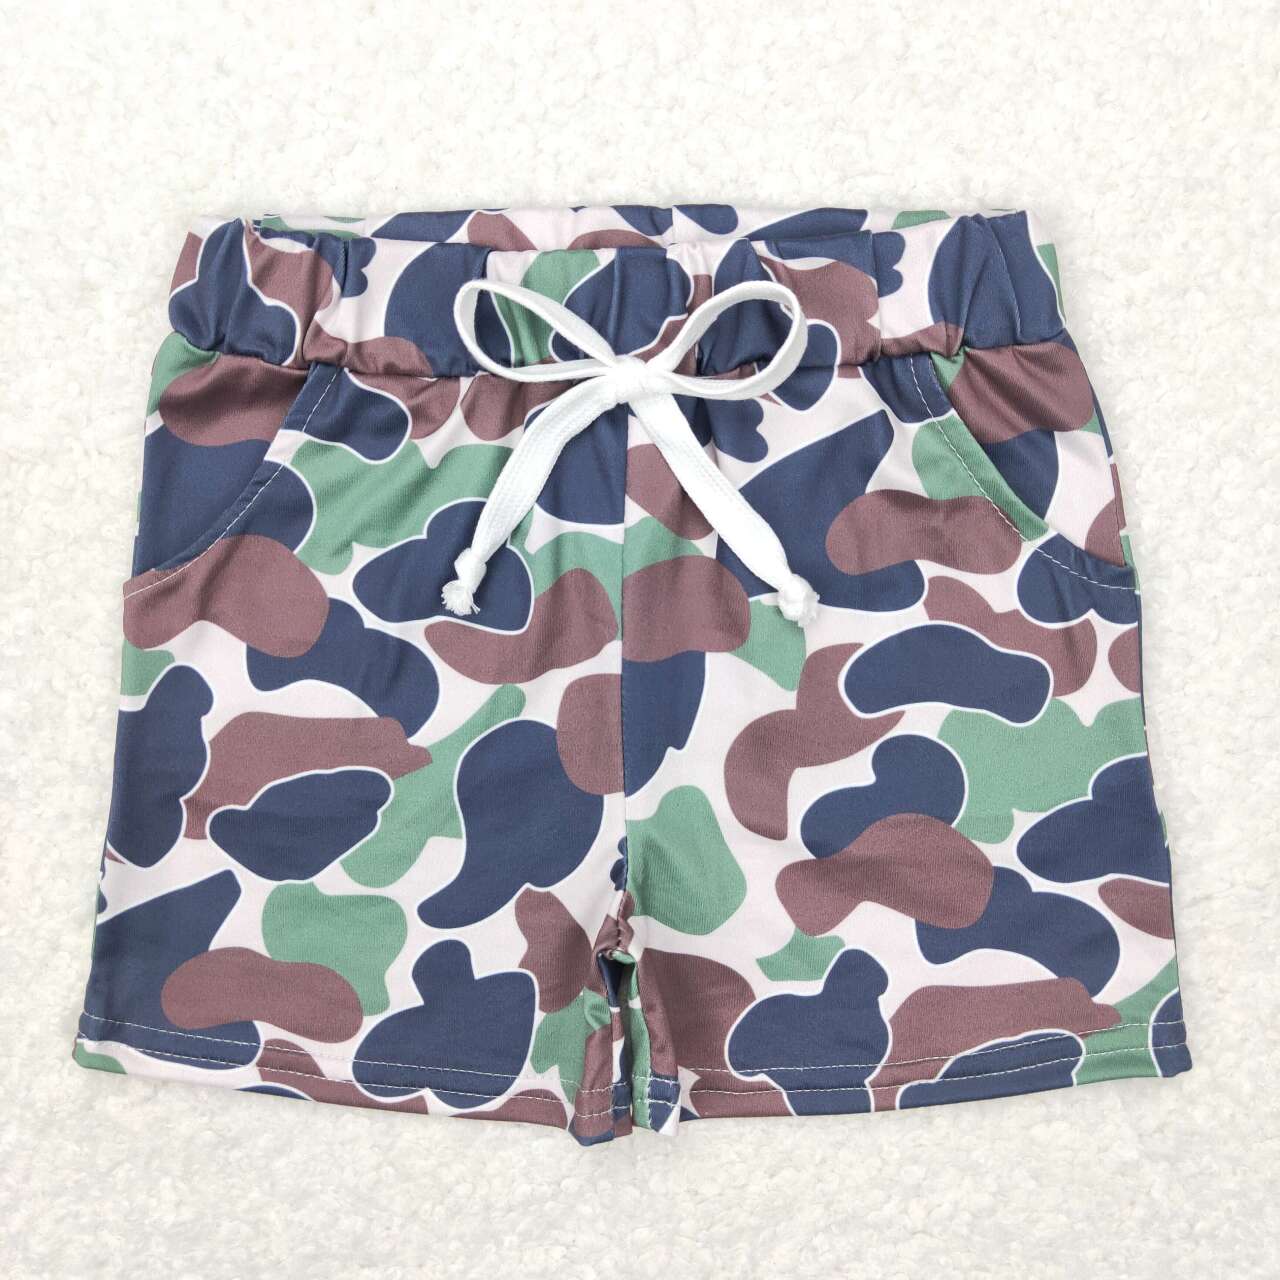 BSSO0401 Grey Bunny Top Green Camo Shorts Boys Easter Clothes Sets